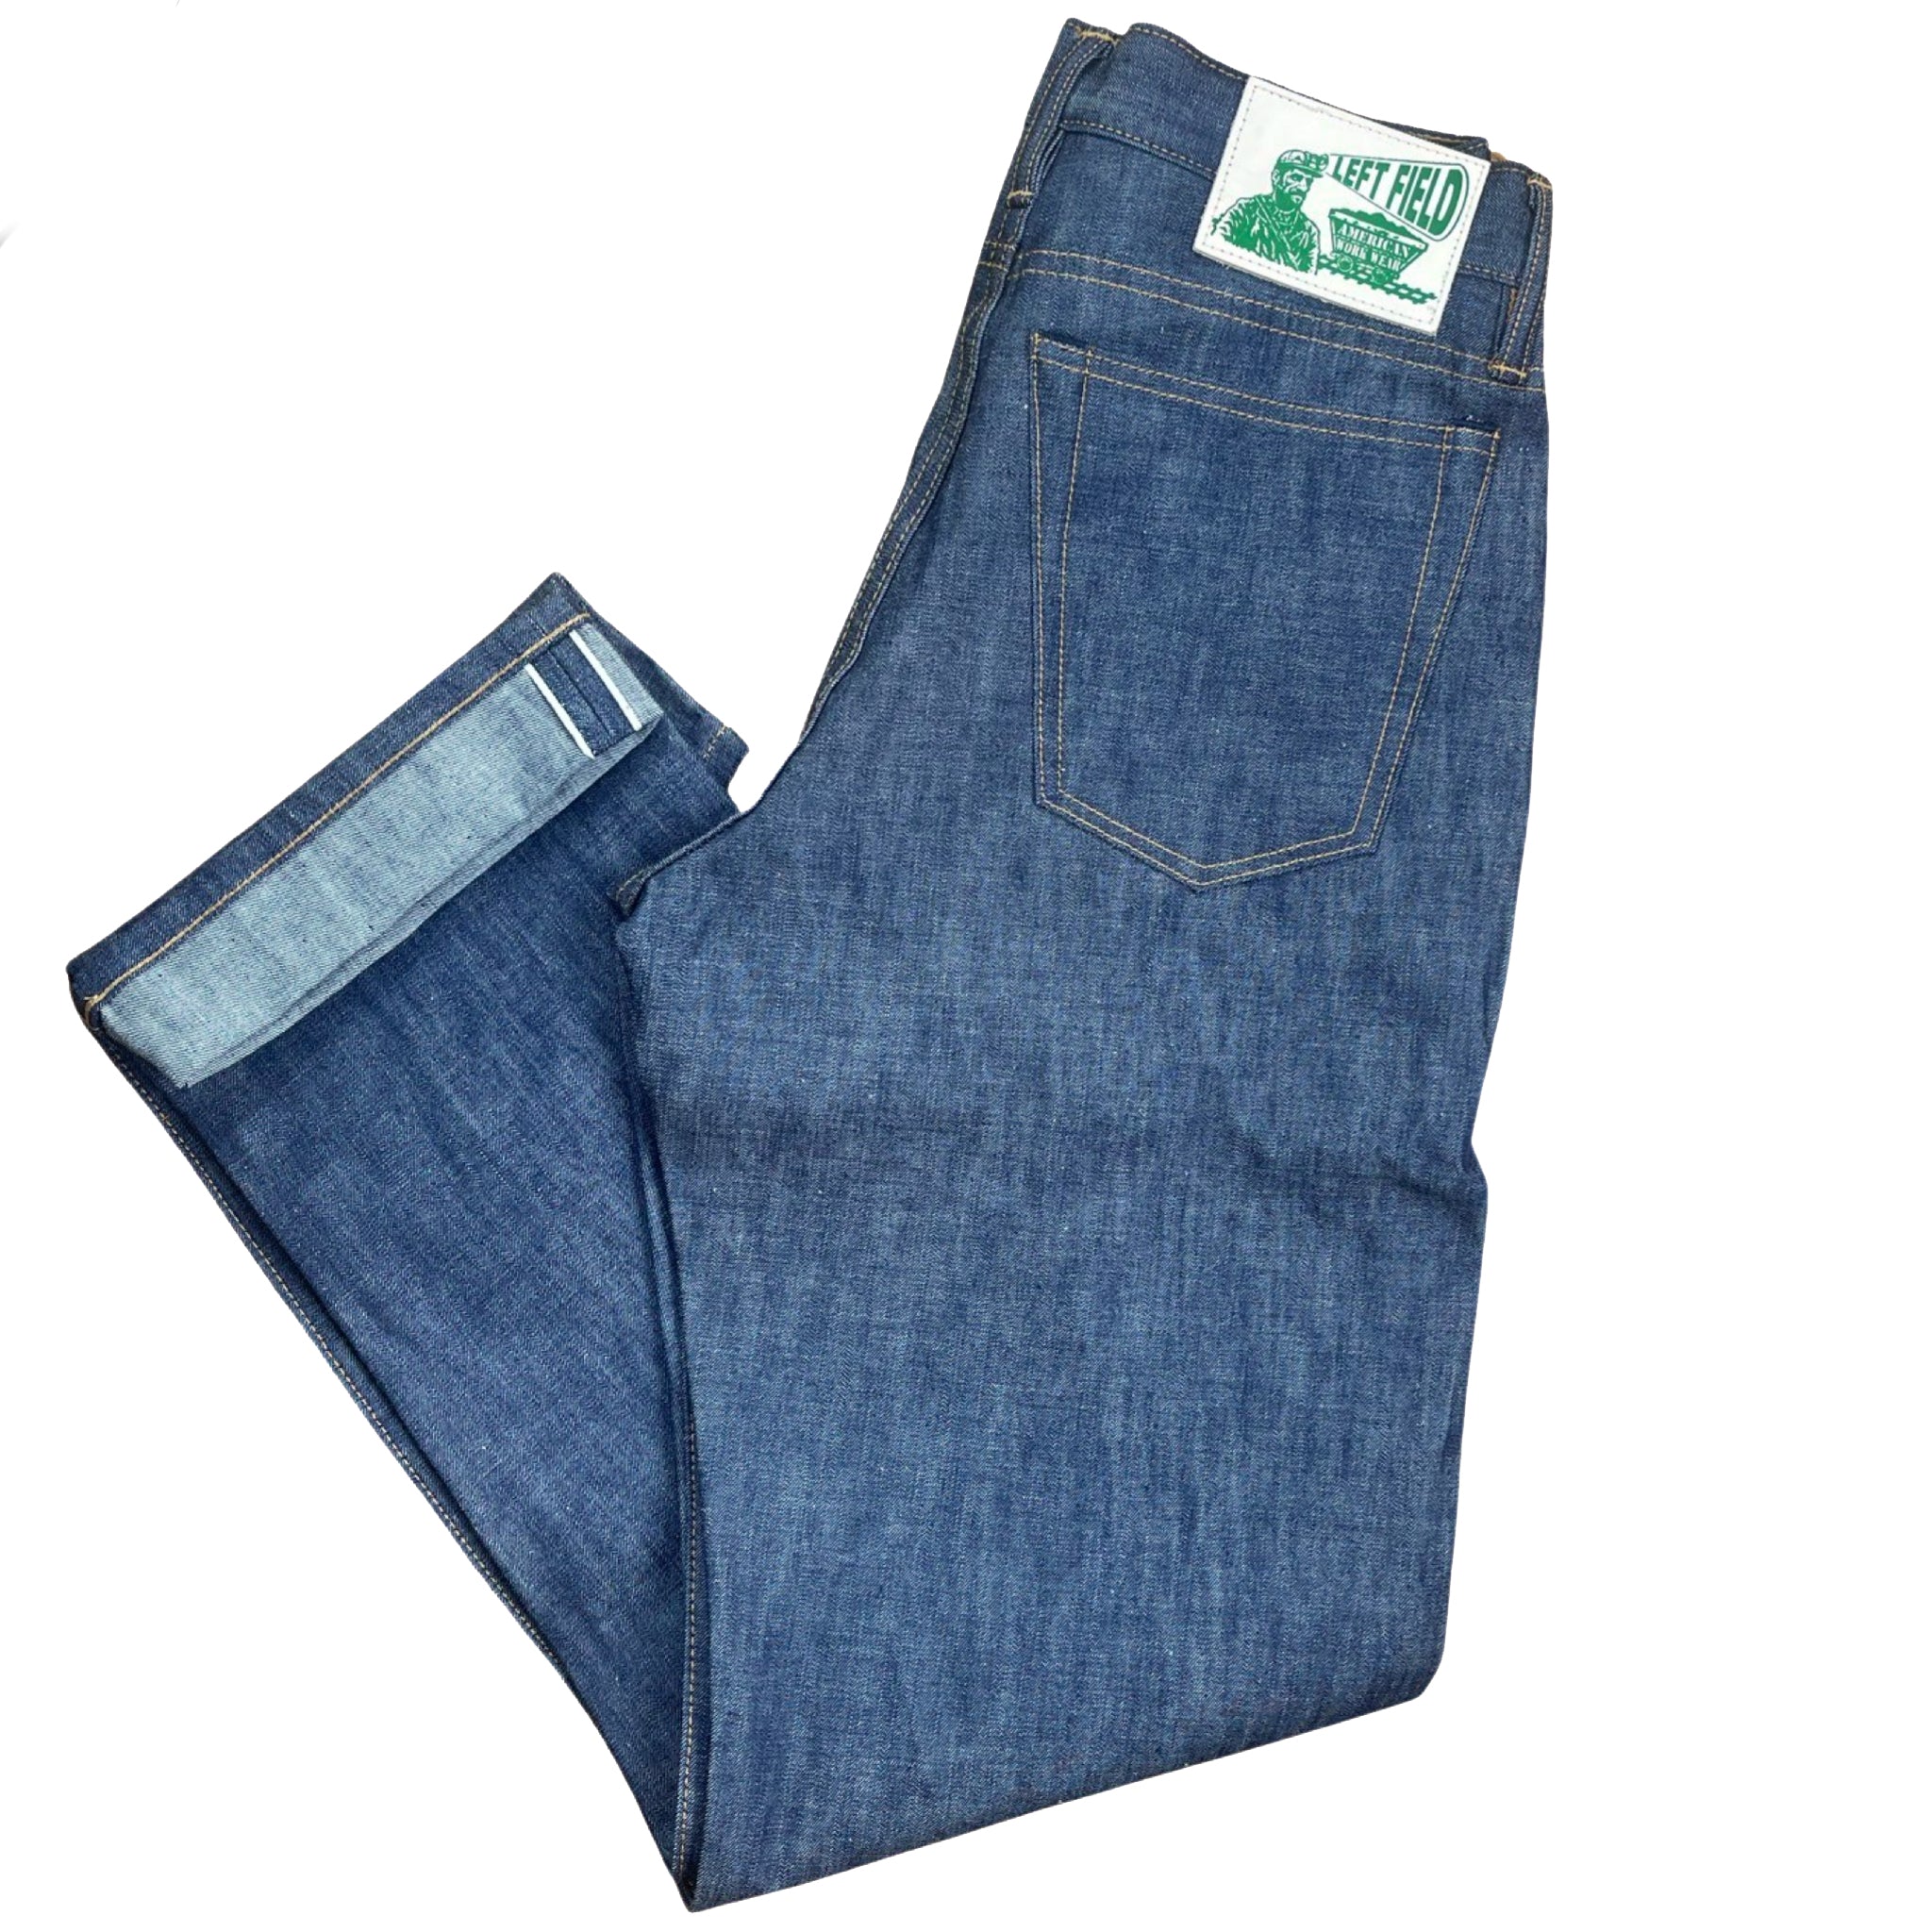 Levi's Selvedge Matchstick Allumette Jeans 30X34 Dark Wash Zip Fly PLEASE  READ | eBay